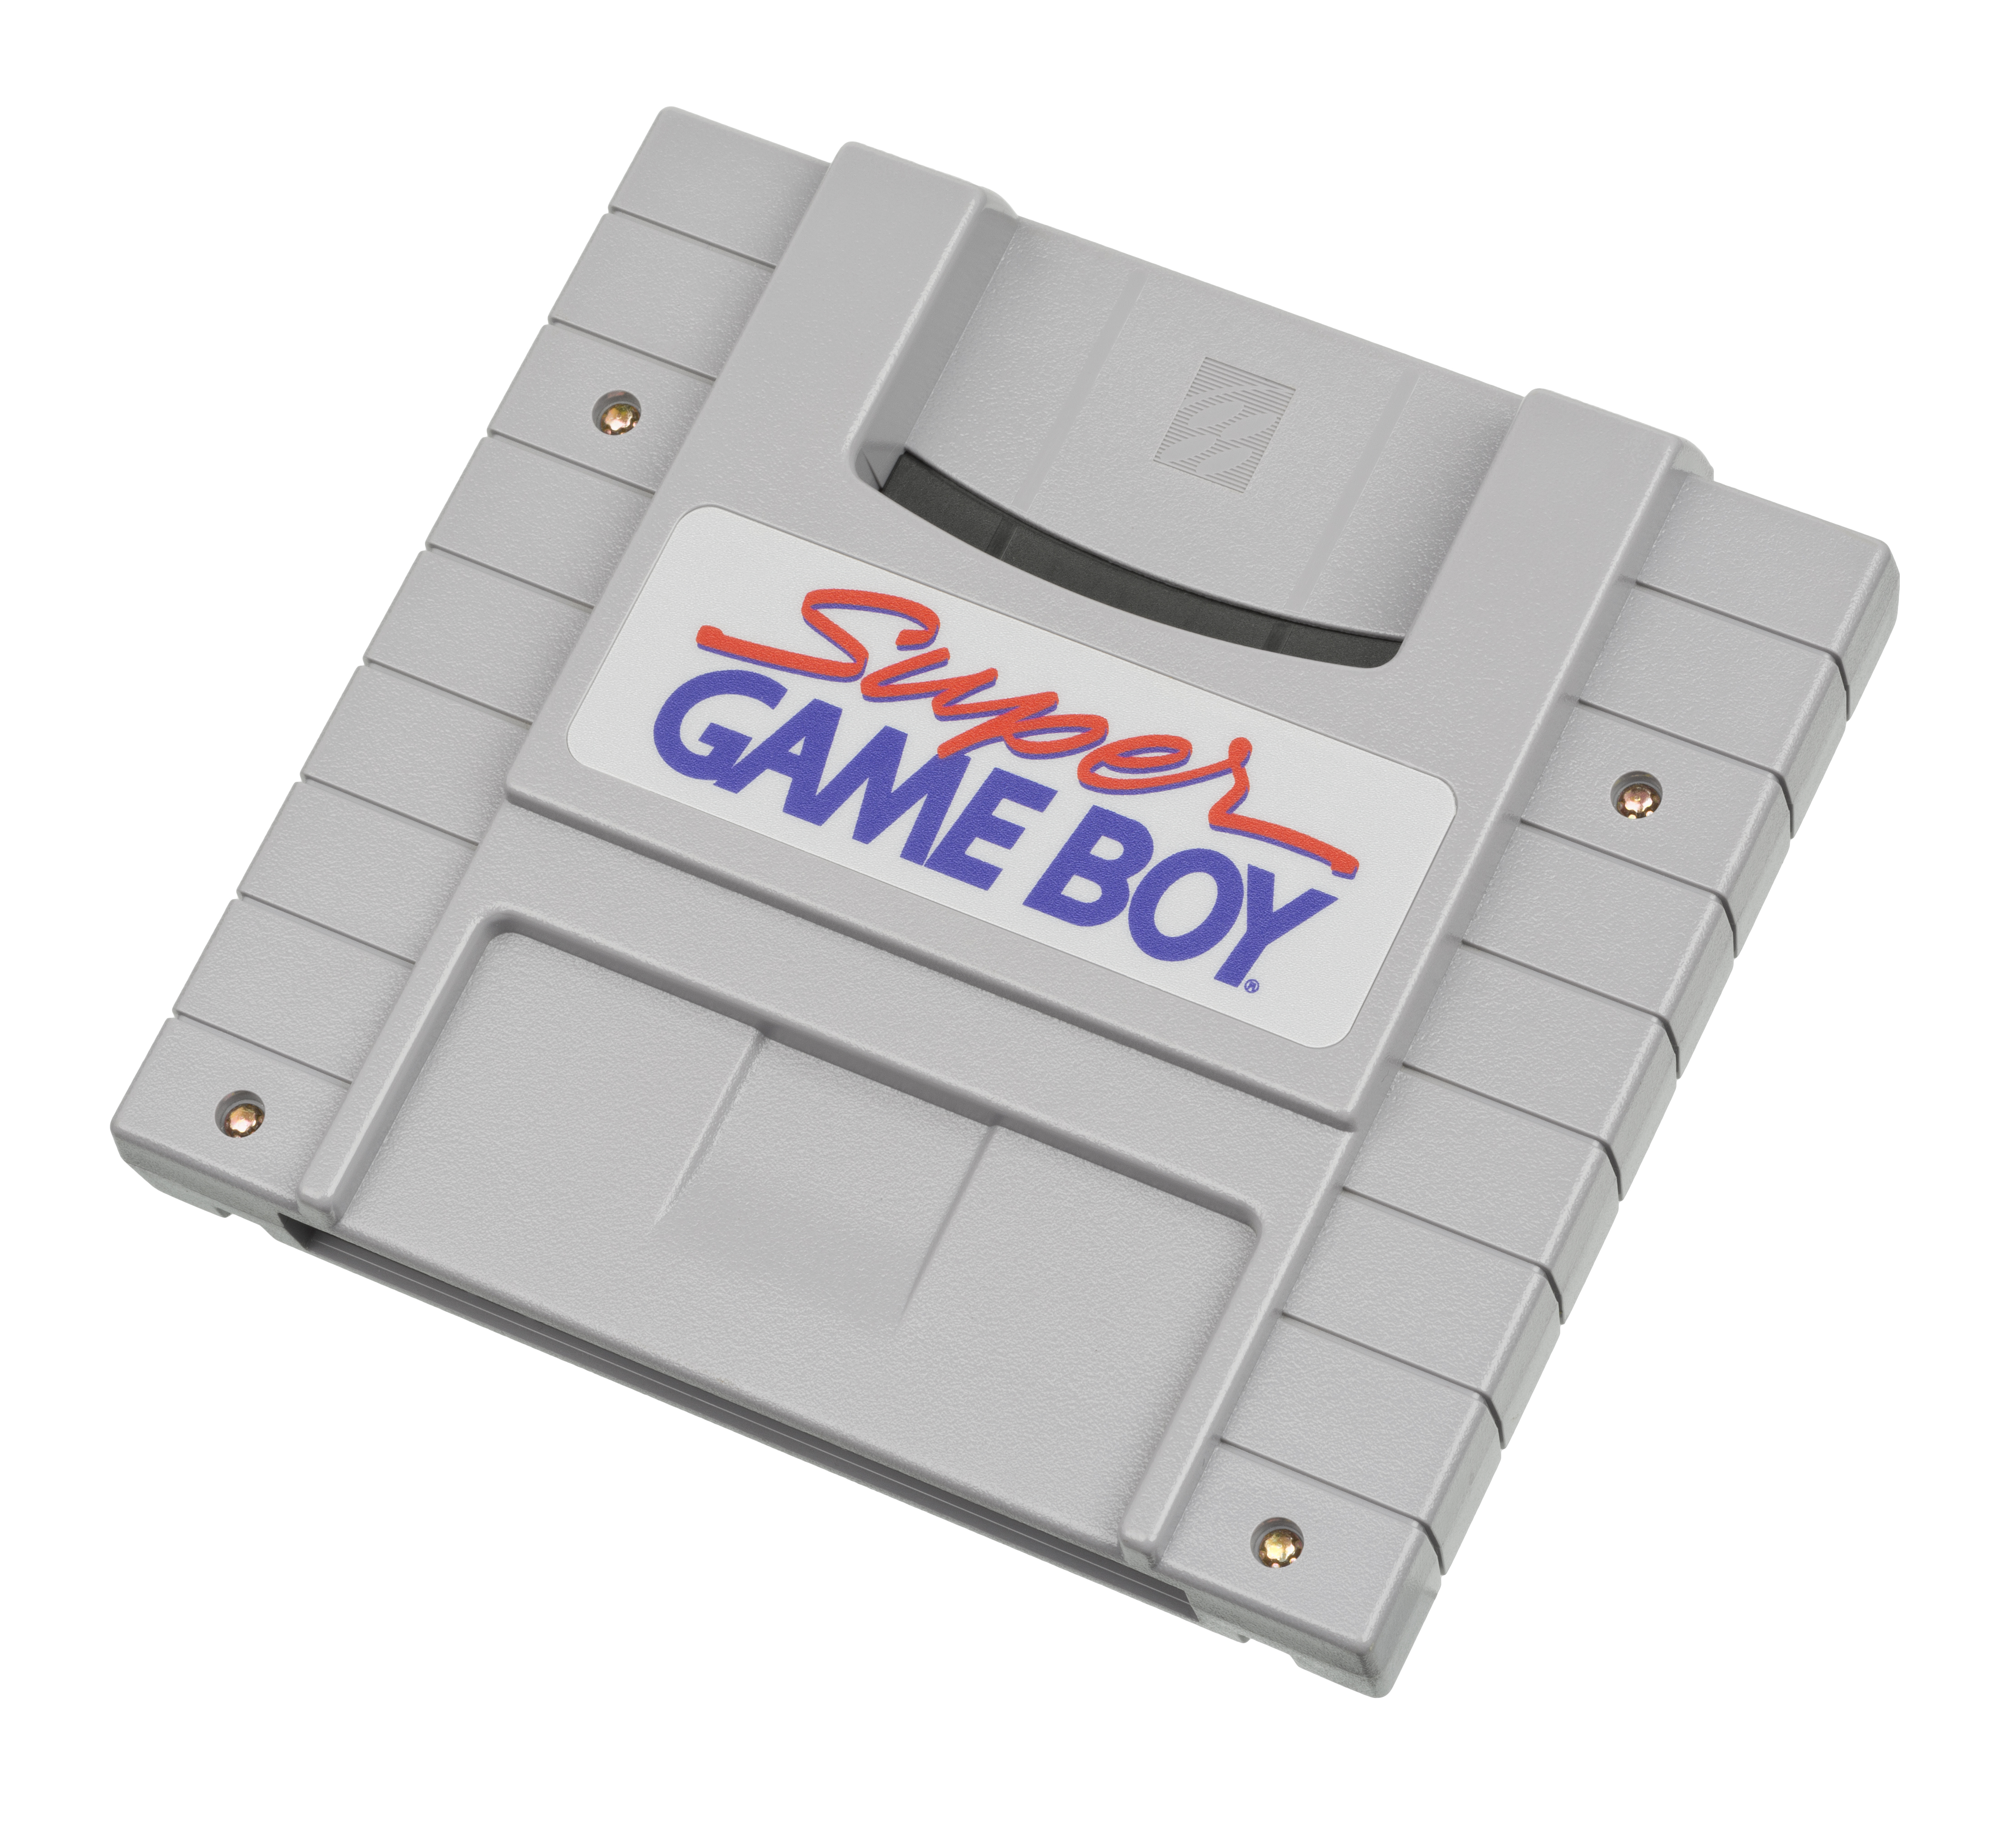 Super Game Boy - Wikipedia